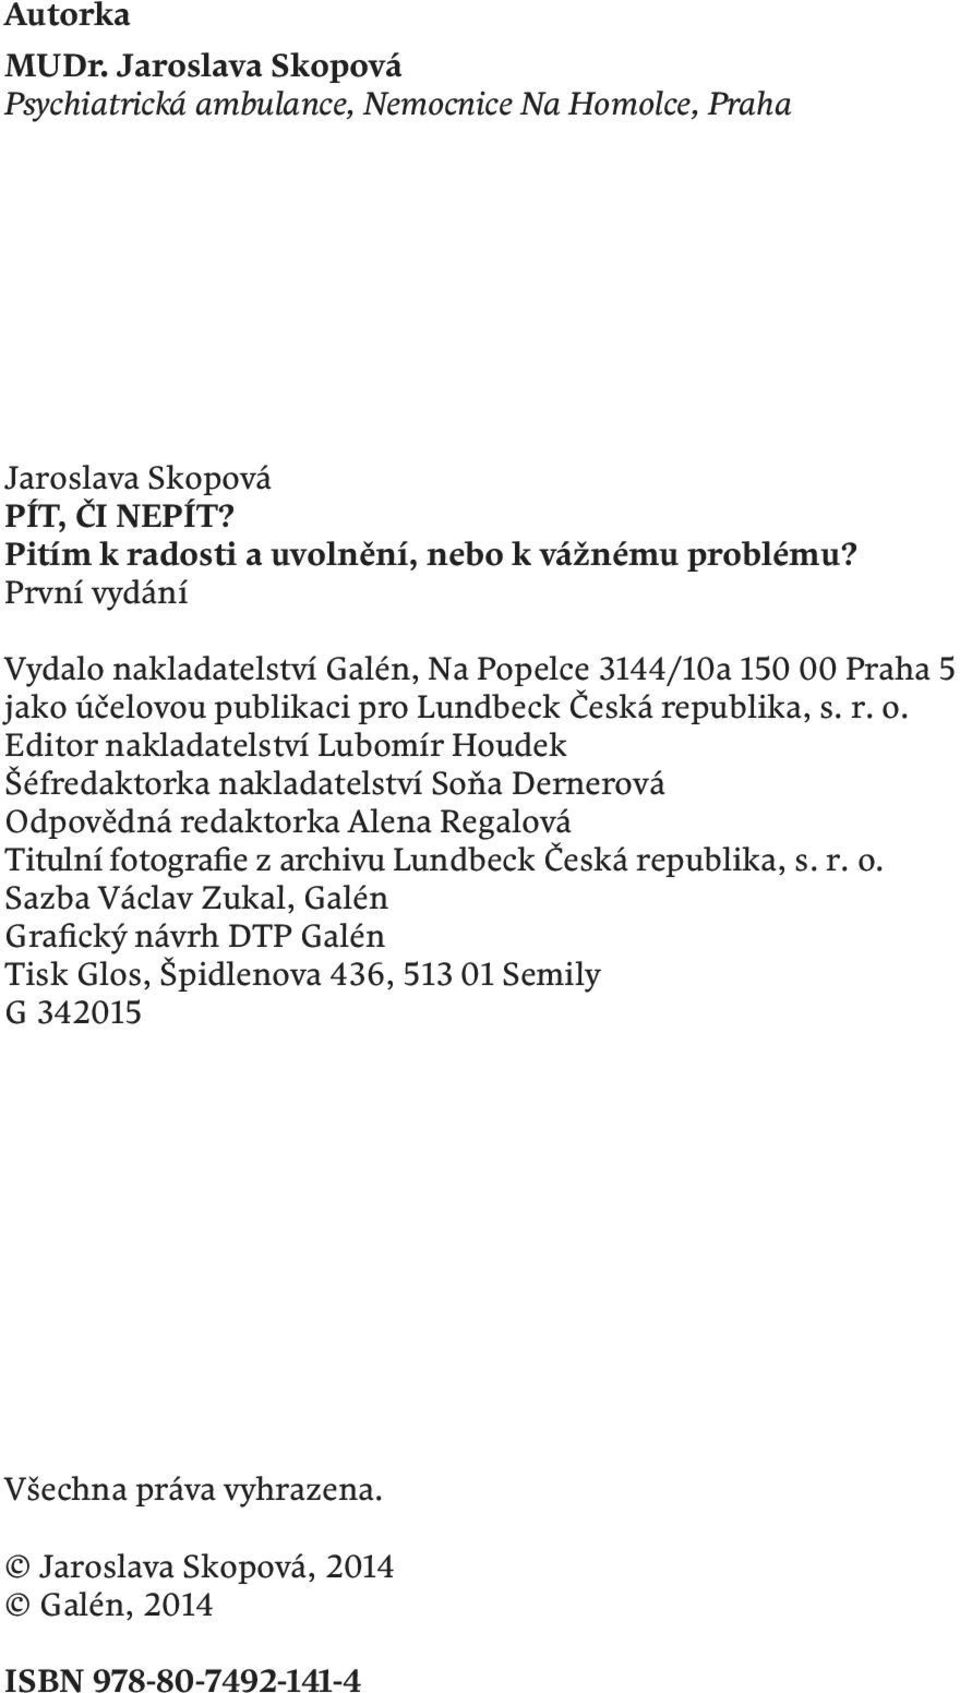 První vydání Vydalo nakladatelství Galén, Na Popelce 3144/10a 150 00 Praha 5 jako účelovou publikaci pro Lundbeck Česká republika, s. r. o.